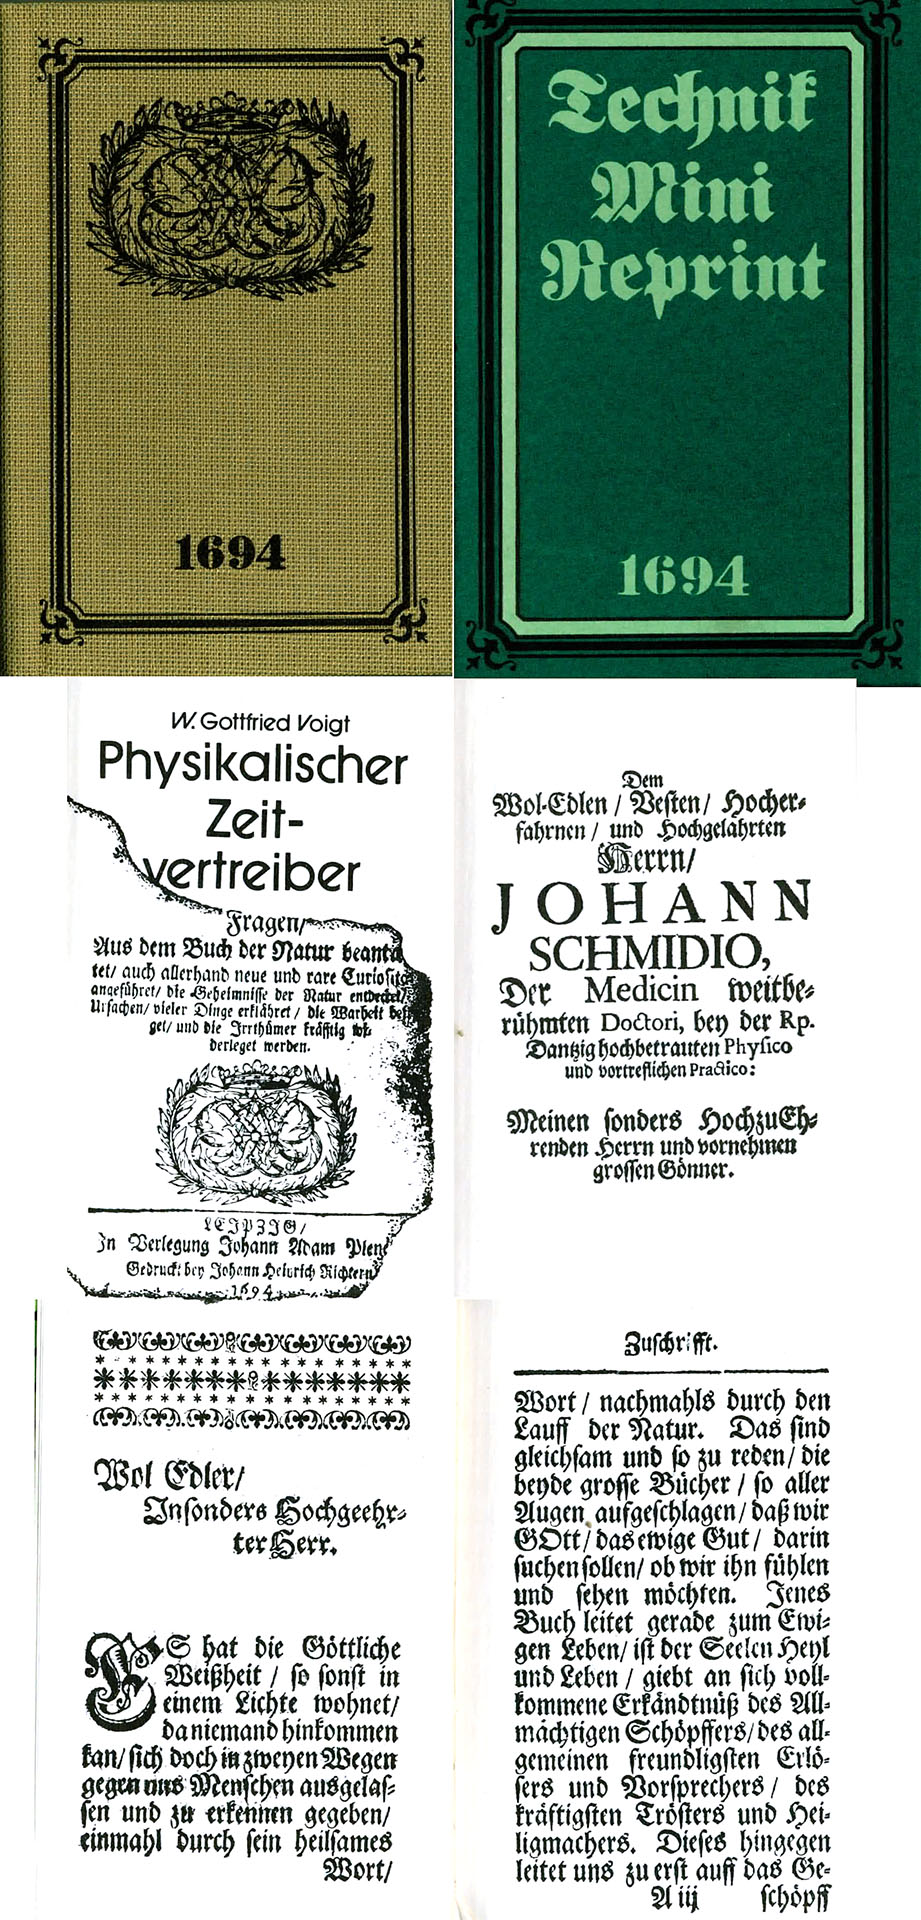 Physikalischer Zeitvertreiber - Reprint 1694 - Voigt, W. Gottfried